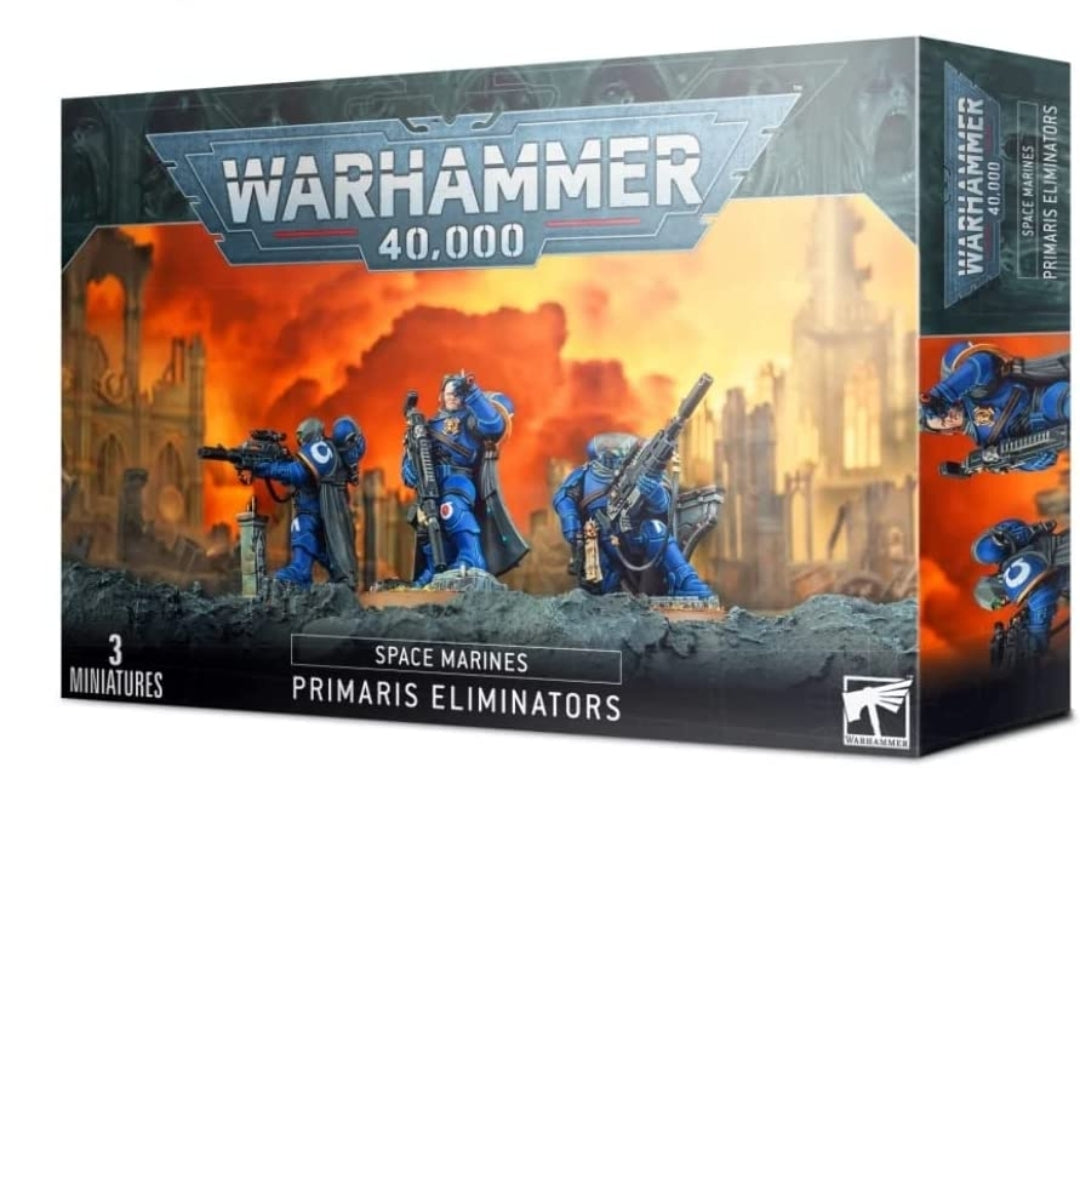 Warhammer 40,000: Space Marines (Primaris Eliminators)